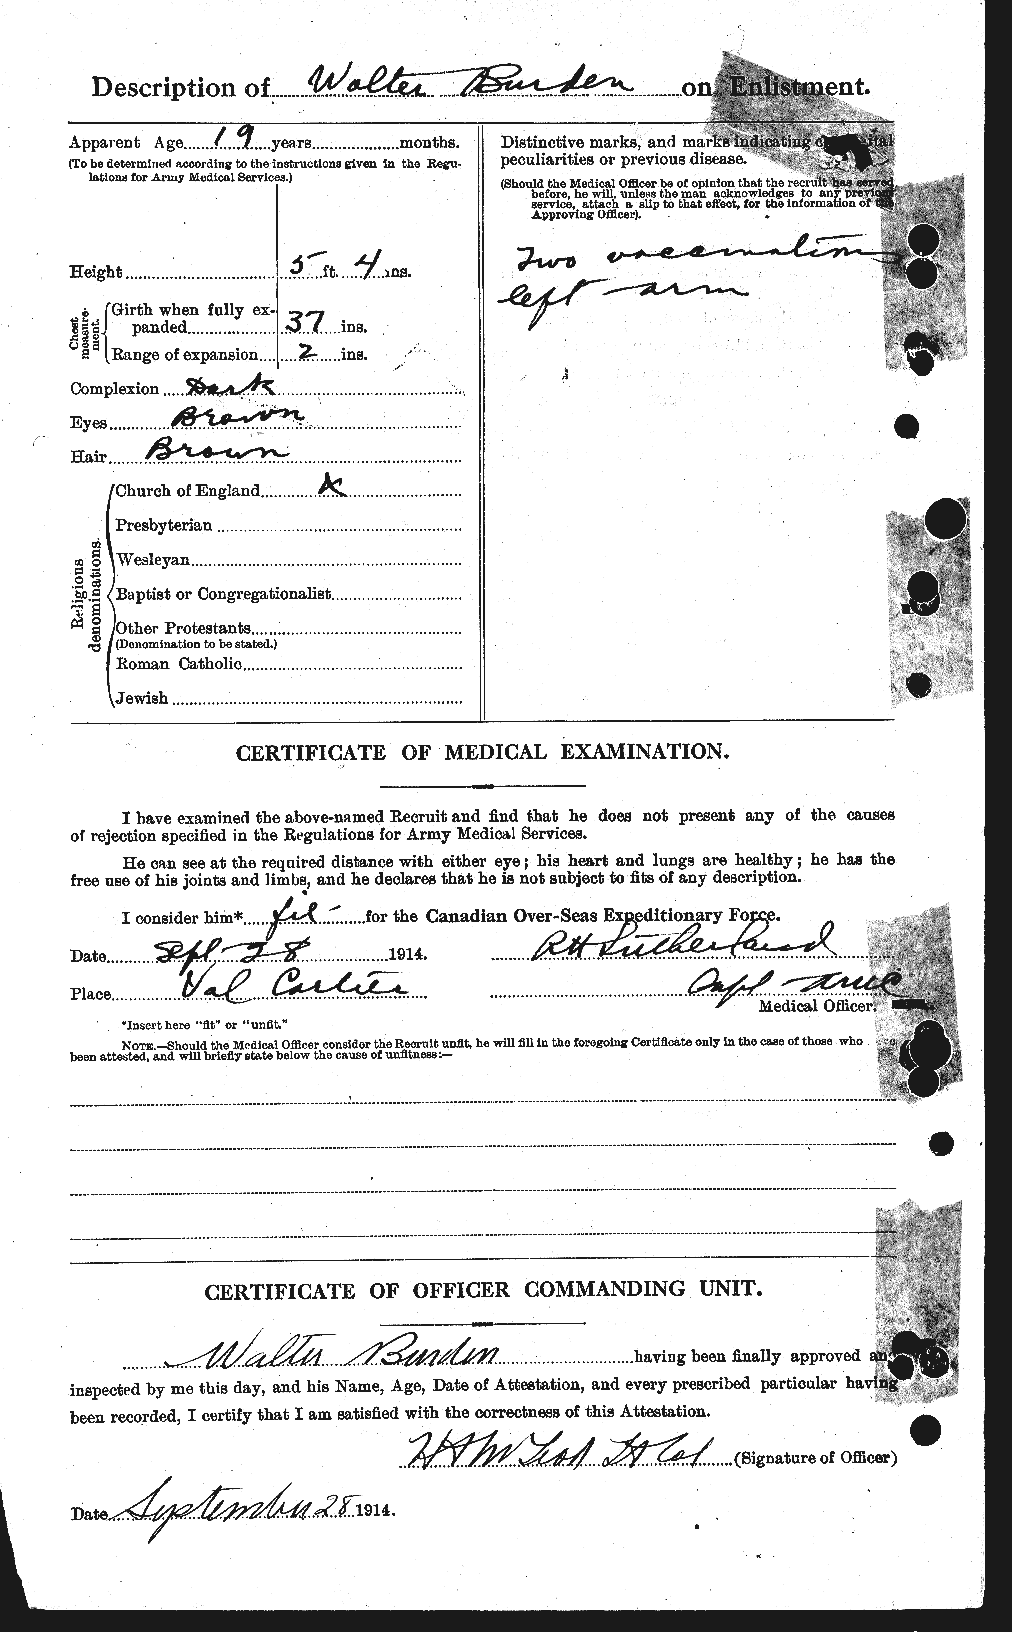 Dossiers du Personnel de la Première Guerre mondiale - CEC 273358b